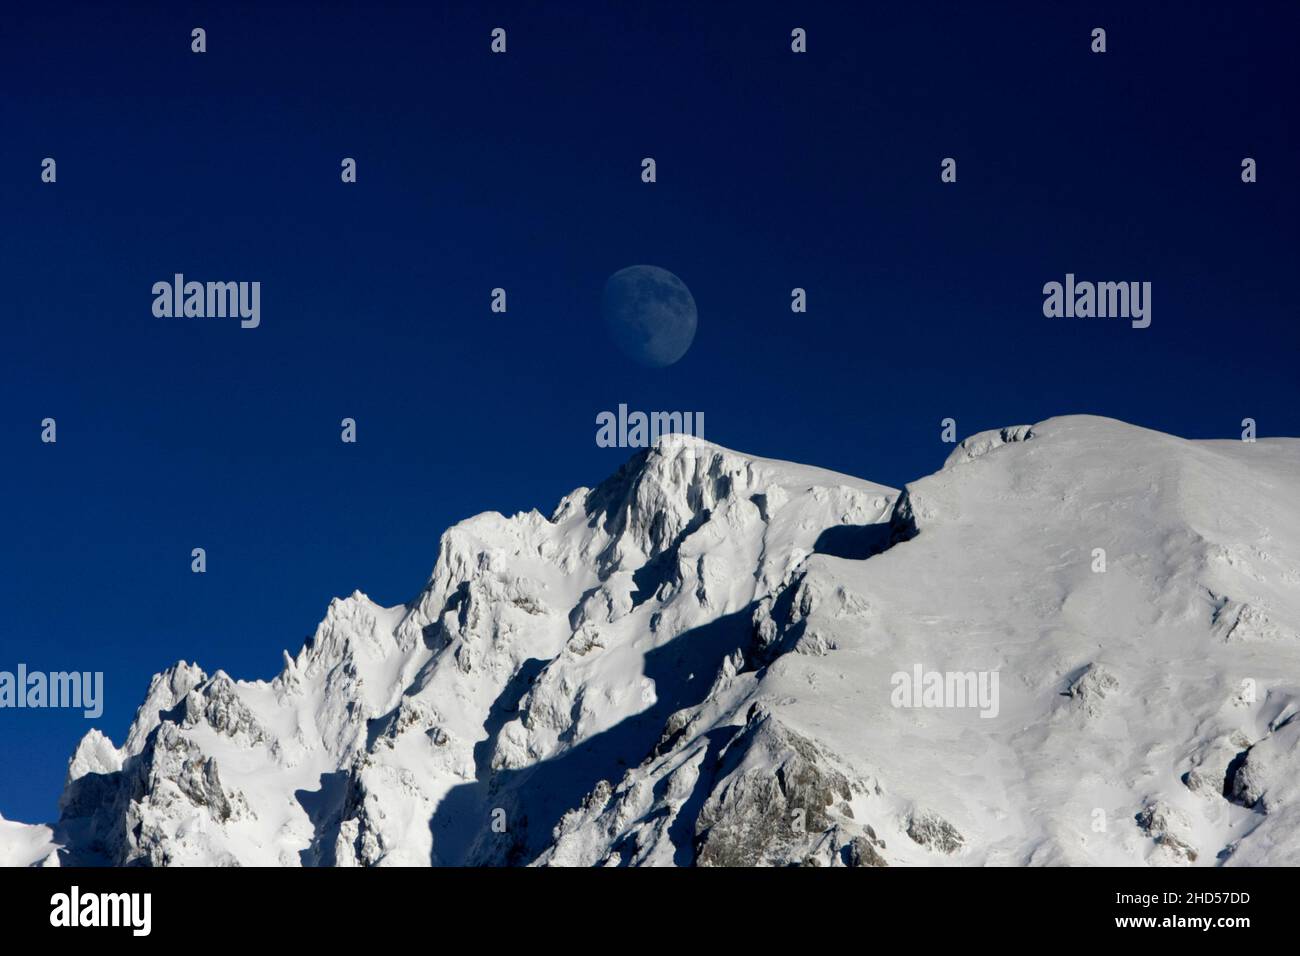 Mond setzt sich über dem schneebedeckten Berg Maglic in Bosnien nieder. Stockfoto